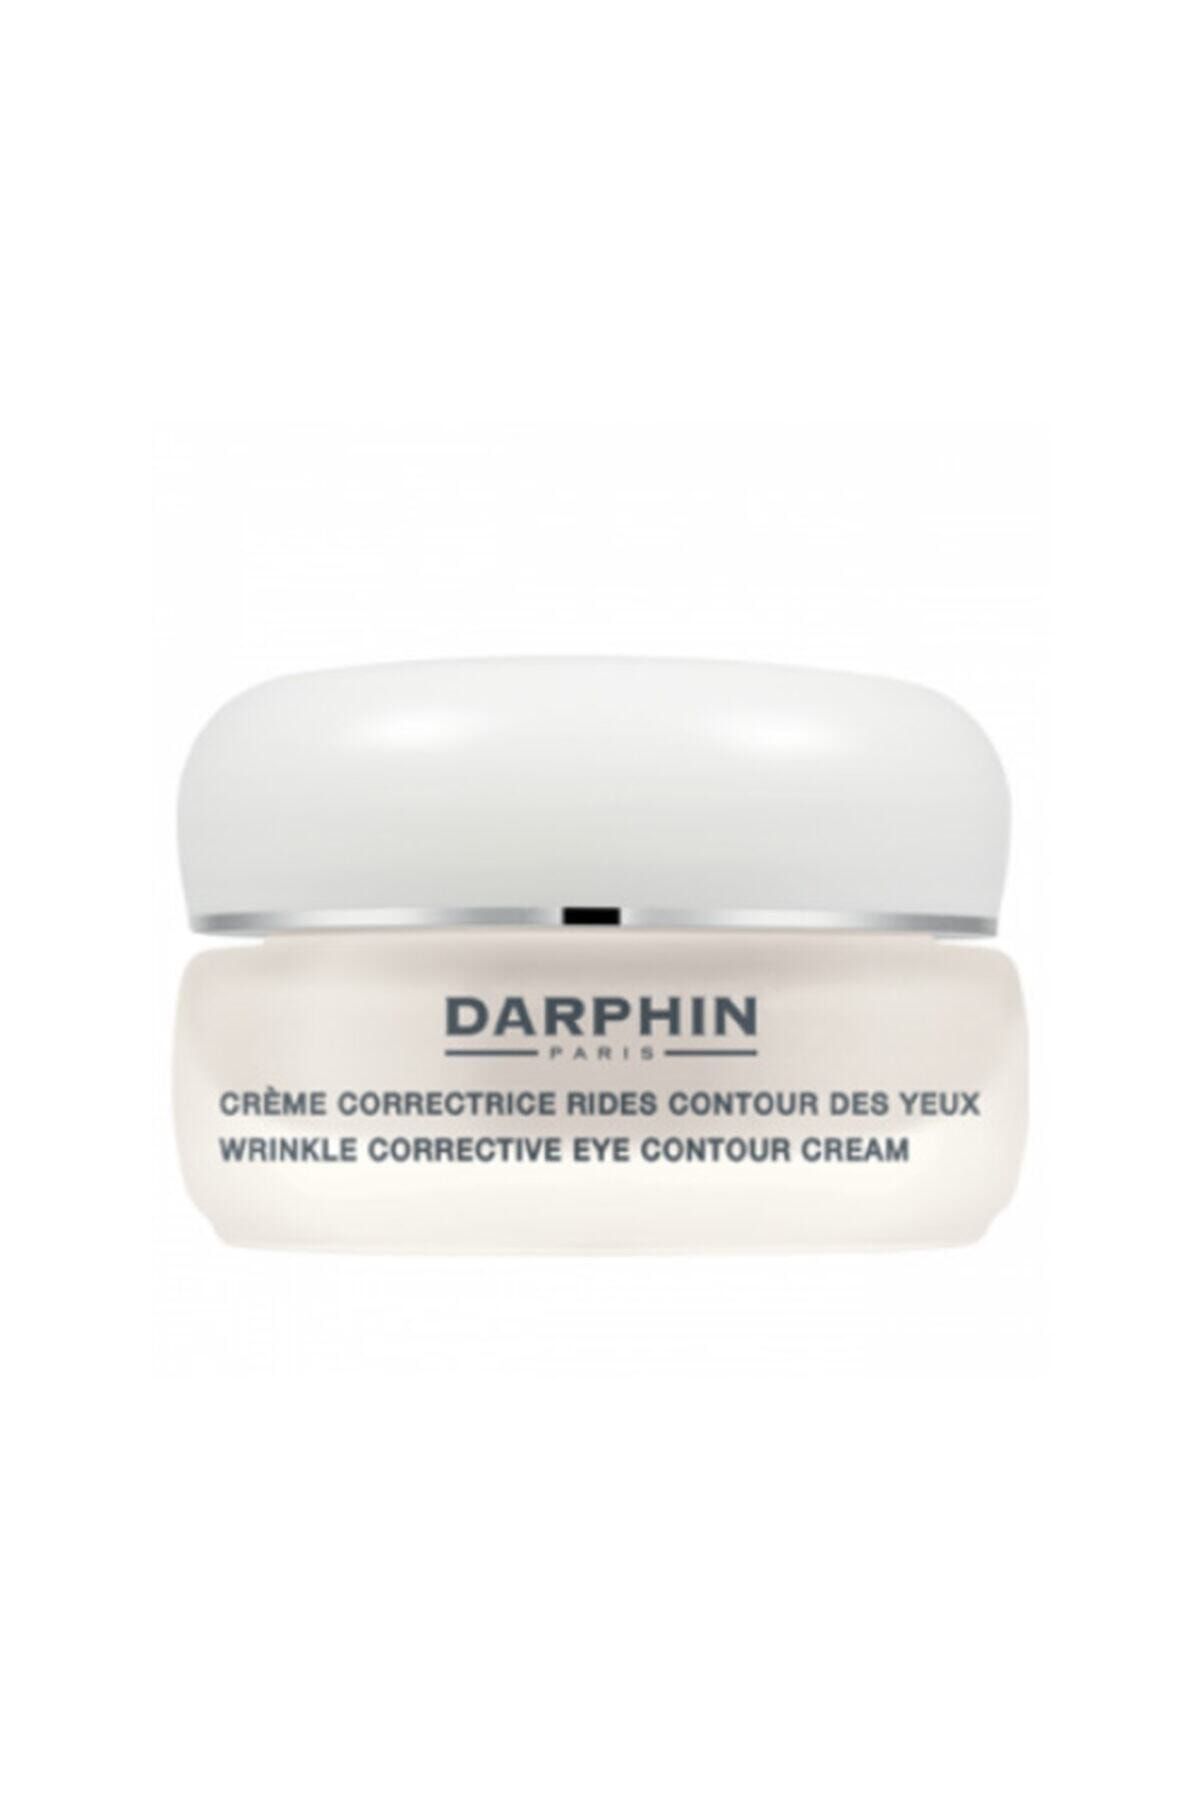 Darphin Kırışıklık Karşıtı Göz Kremi- Wrinkle Corrective Eye Contour Cream 15 ml 882381043063